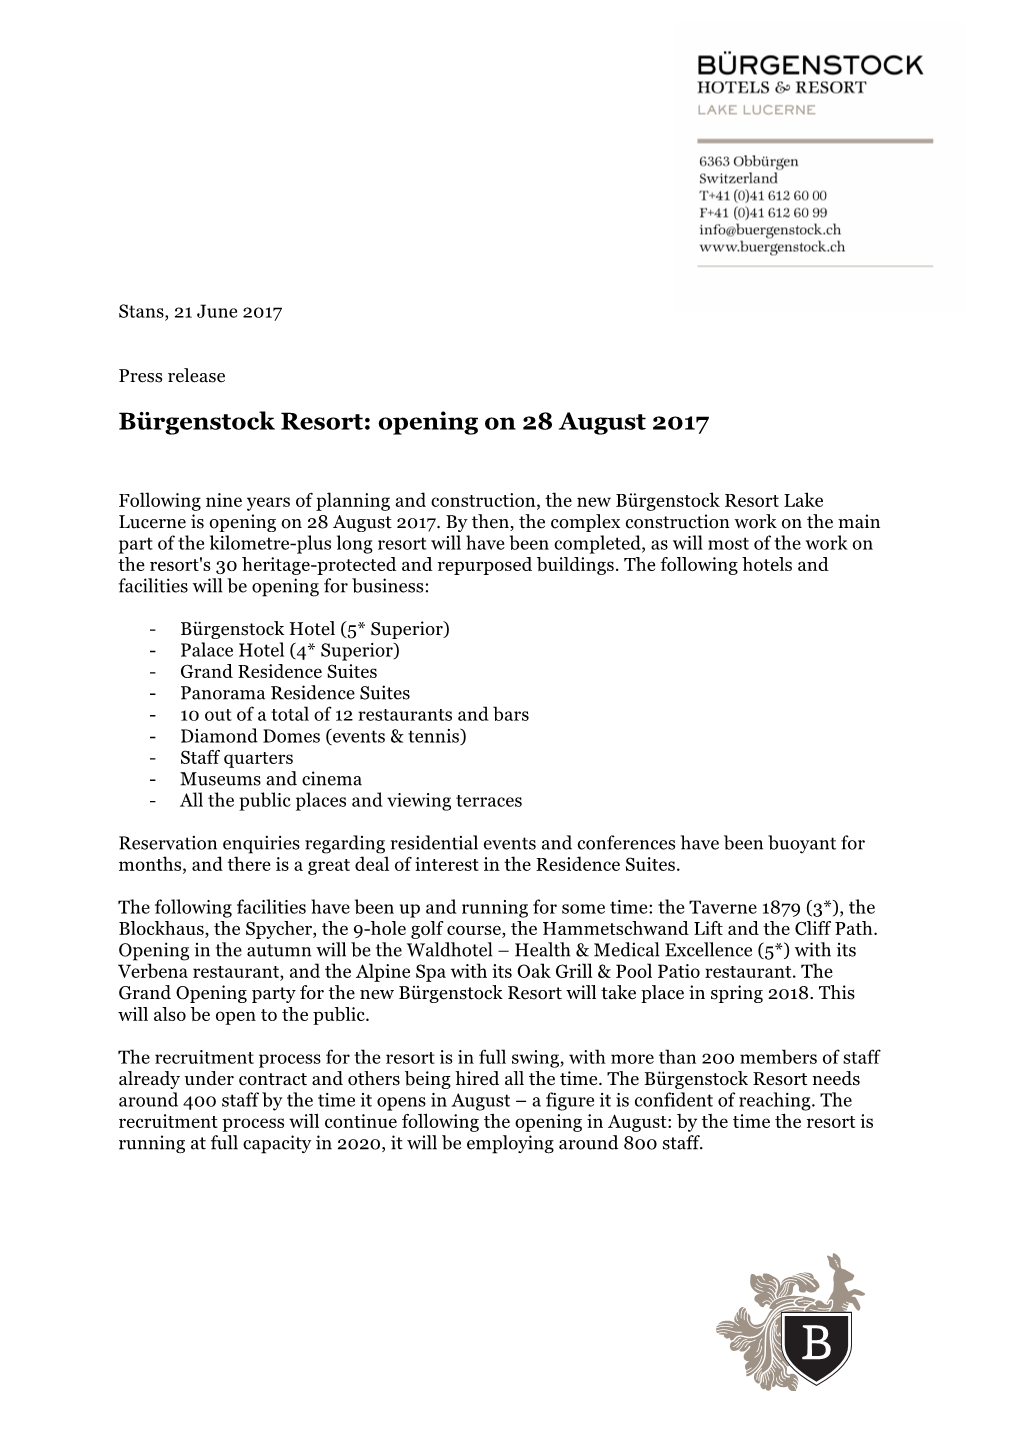 Bürgenstock Resort: Opening on 28 August 2017